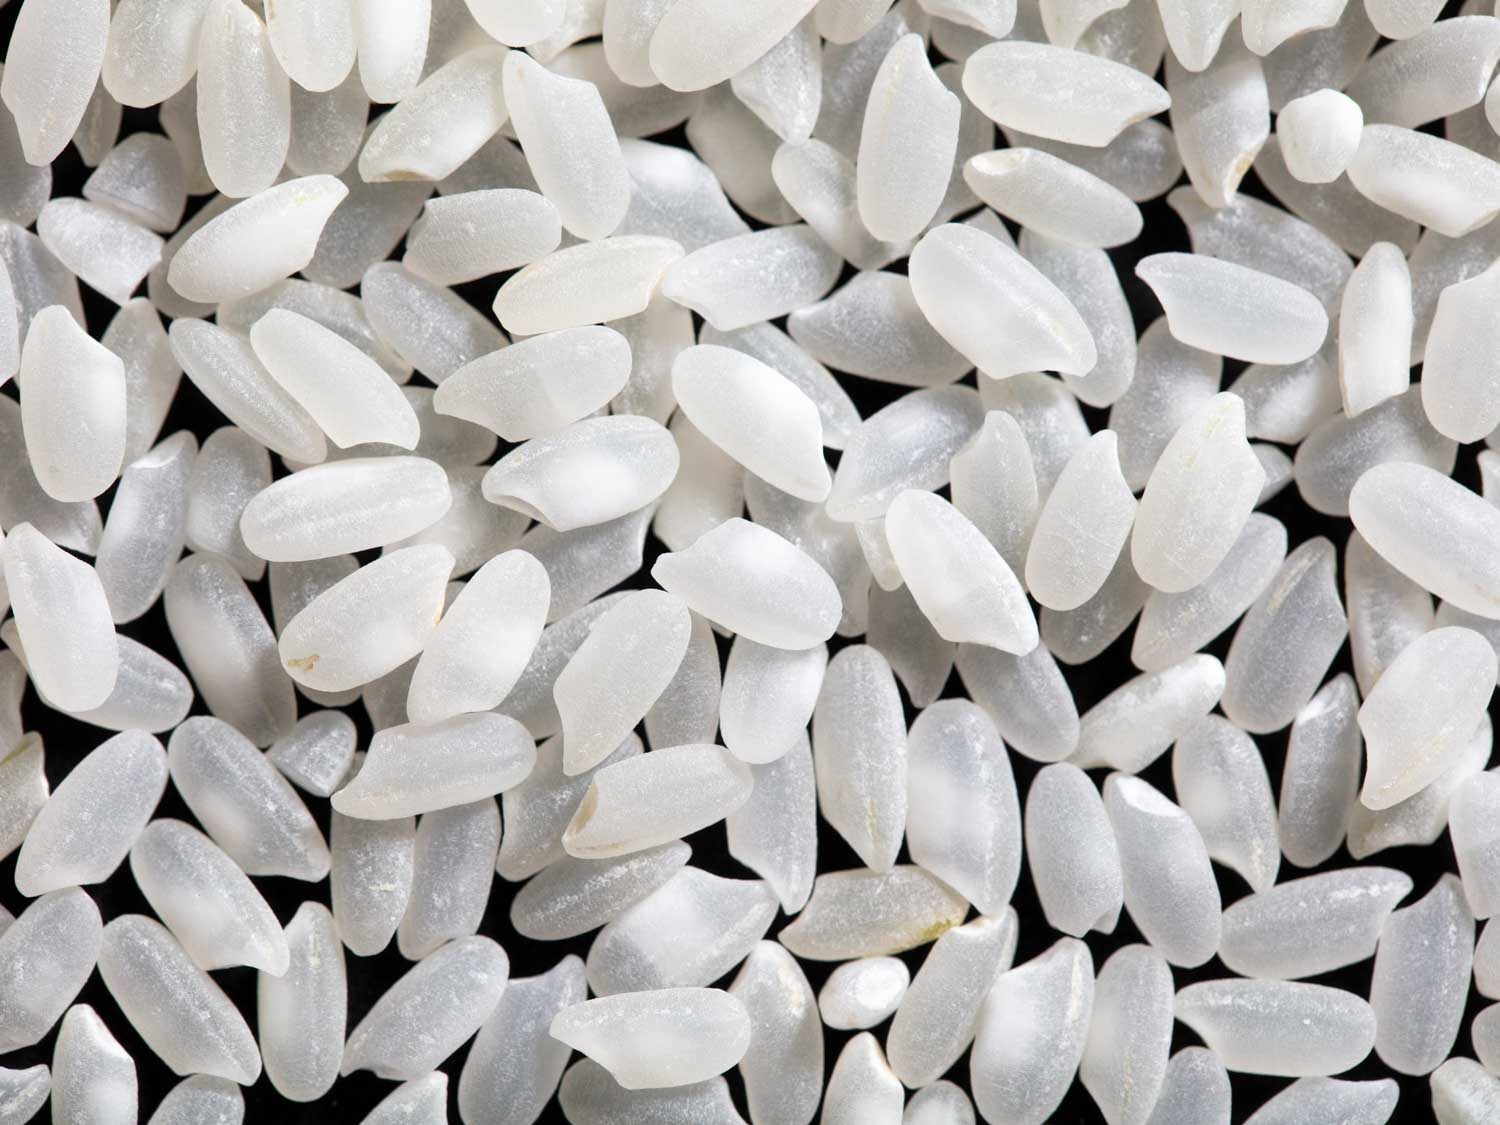 polished Japanese medium-grain rice